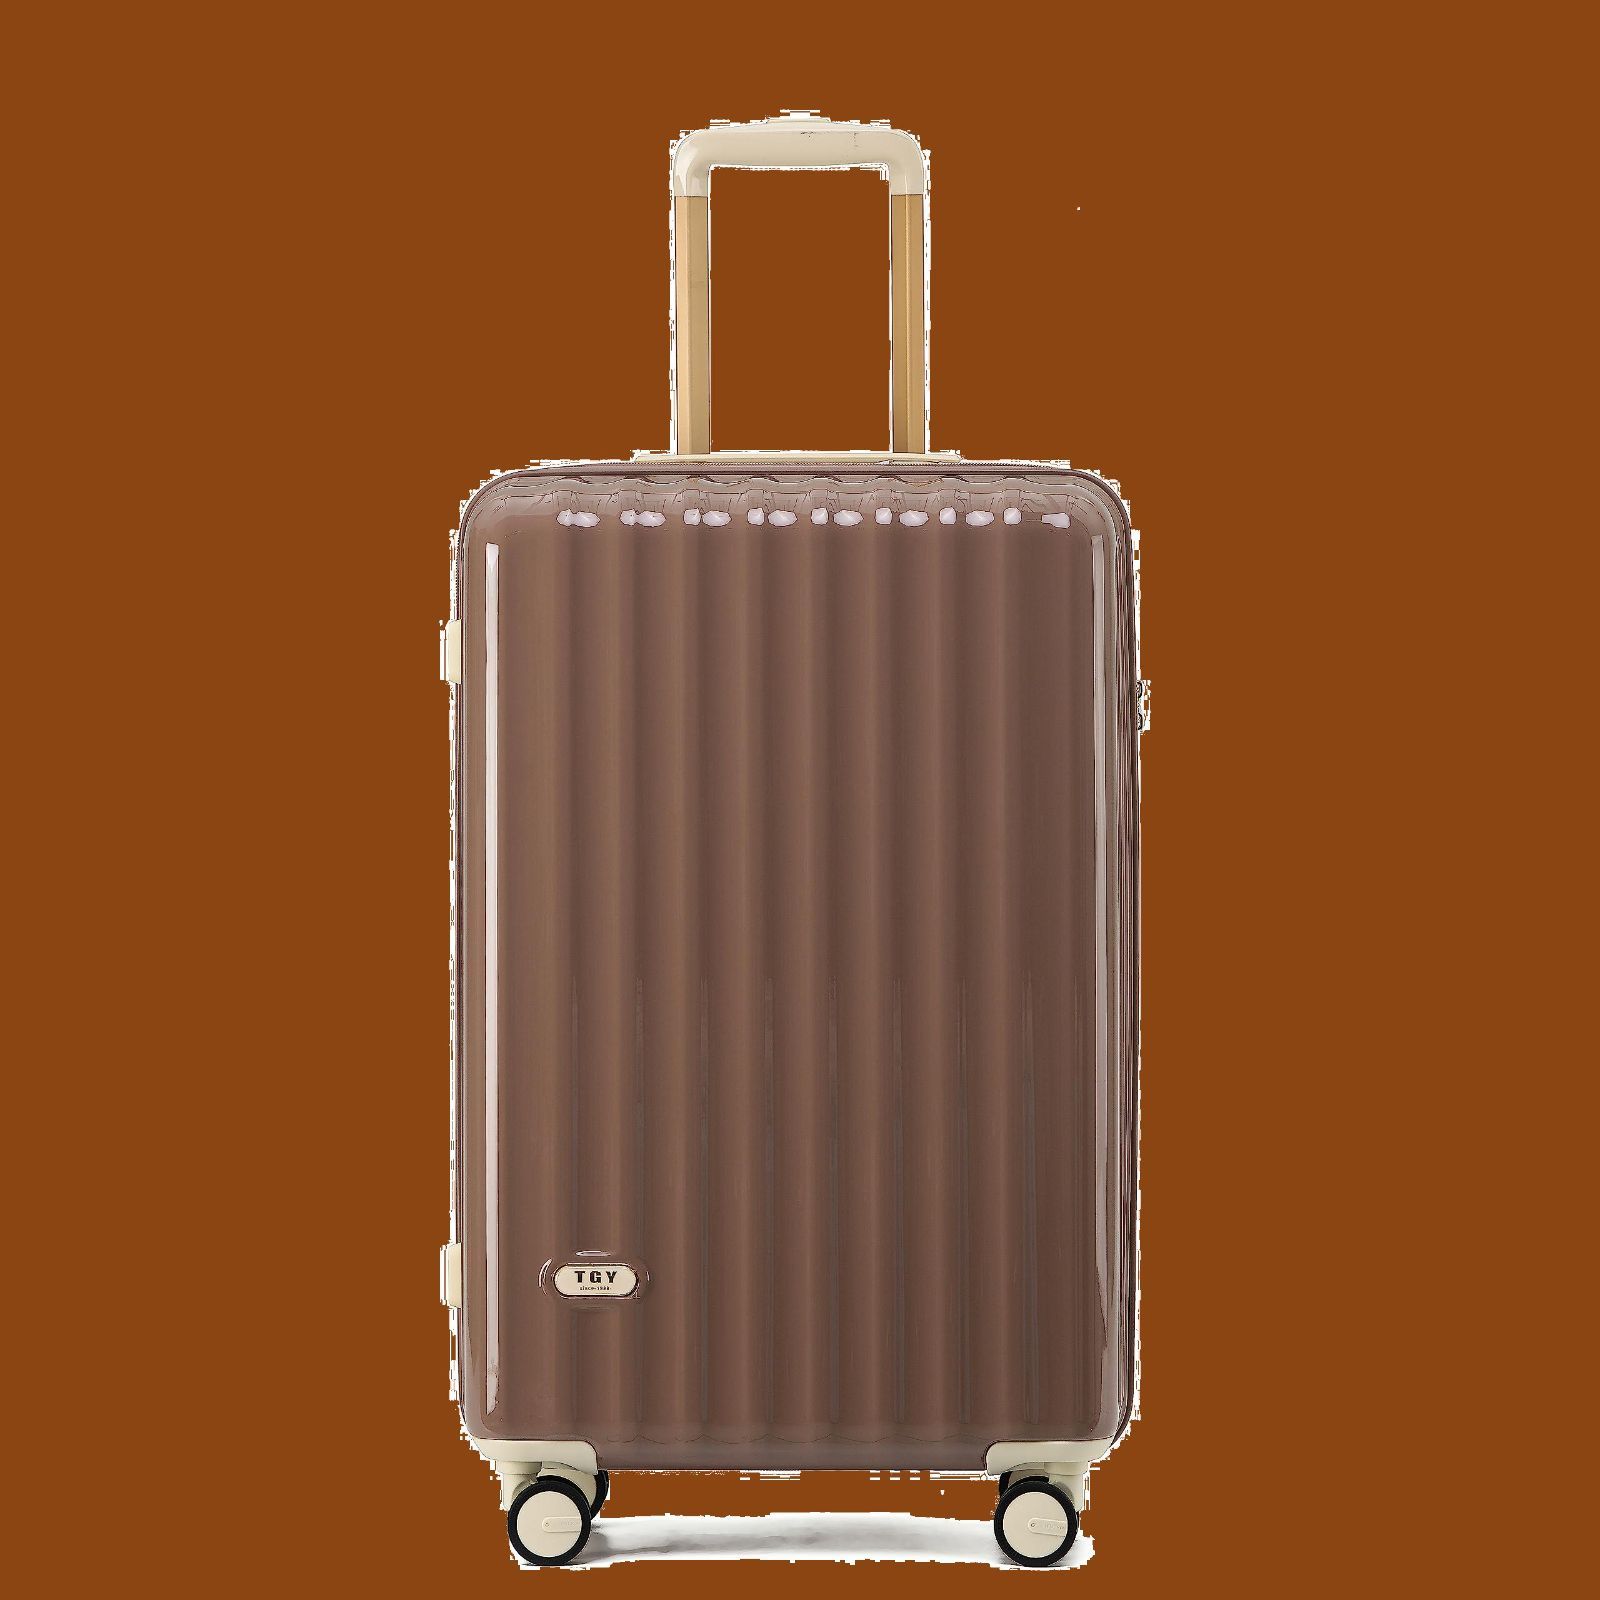 [GGQAAA] 新しい技術 第ニ代スーツケース キャリーケース ファスナーフレーム TSAロック 機内持込 軽い かわいい Mサイズ (Brown)